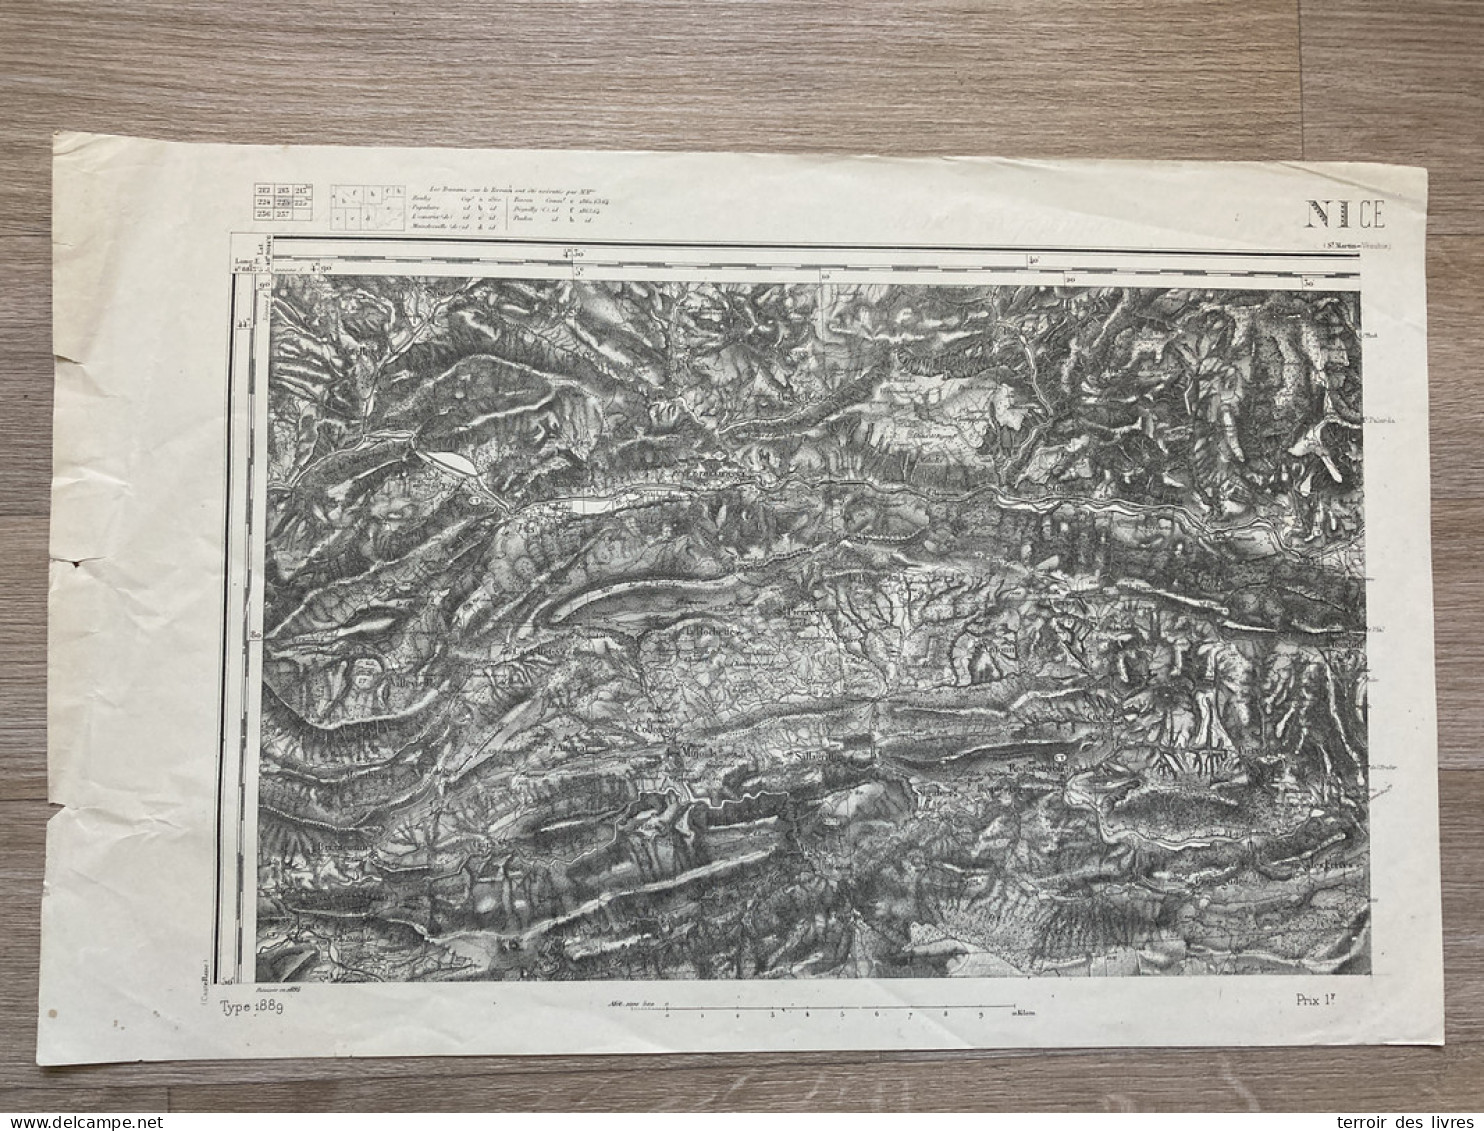 Carte état Major NICE 1895 33x50cm LA PENNE ST-PIERRE ST-ANTONIN LA-ROCHETTE TOUET-SUR-VAR PUGET-THENIERS ASCROS PUGET-R - Cartes Géographiques